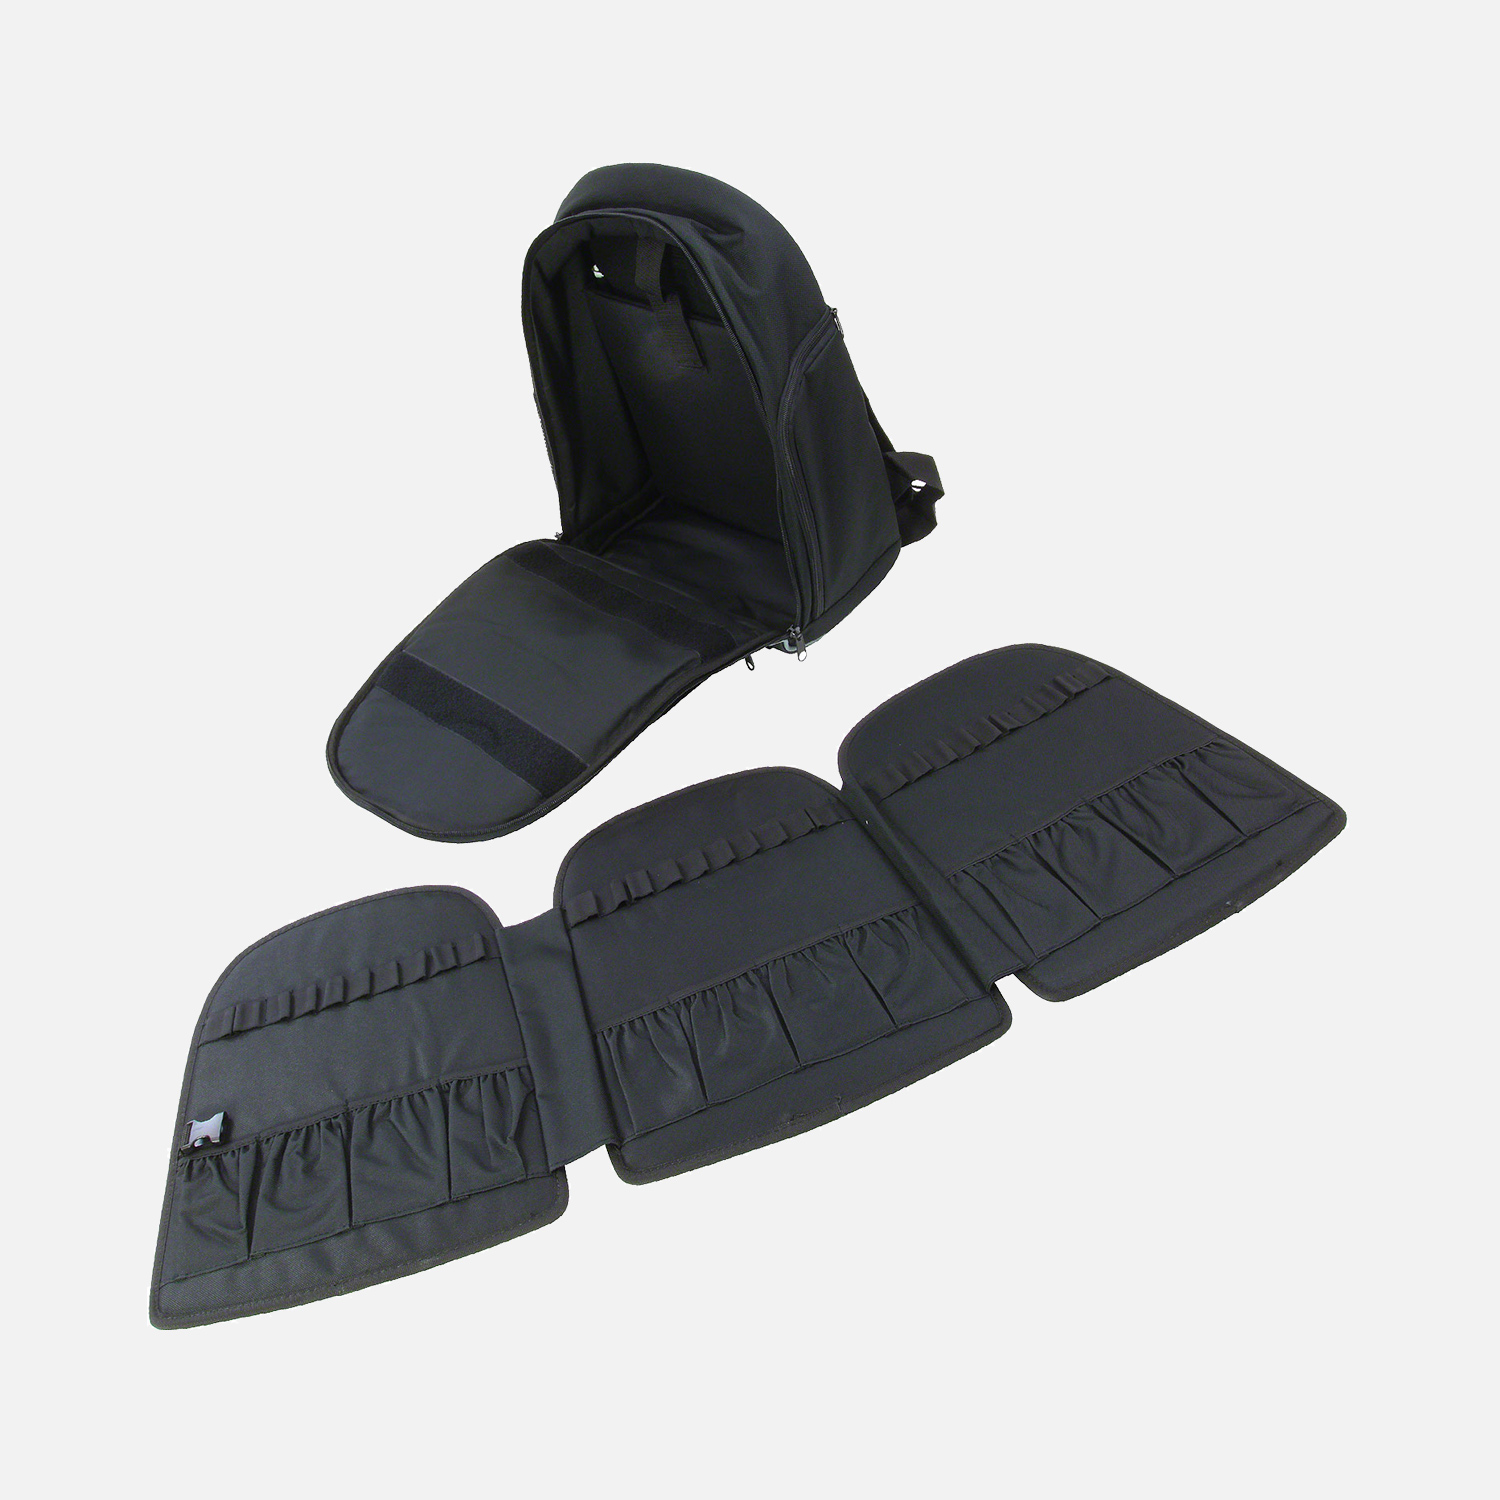 1 Allit Premium Werkzeugrucksack - McPlus Backpack >L< schwarz/silber